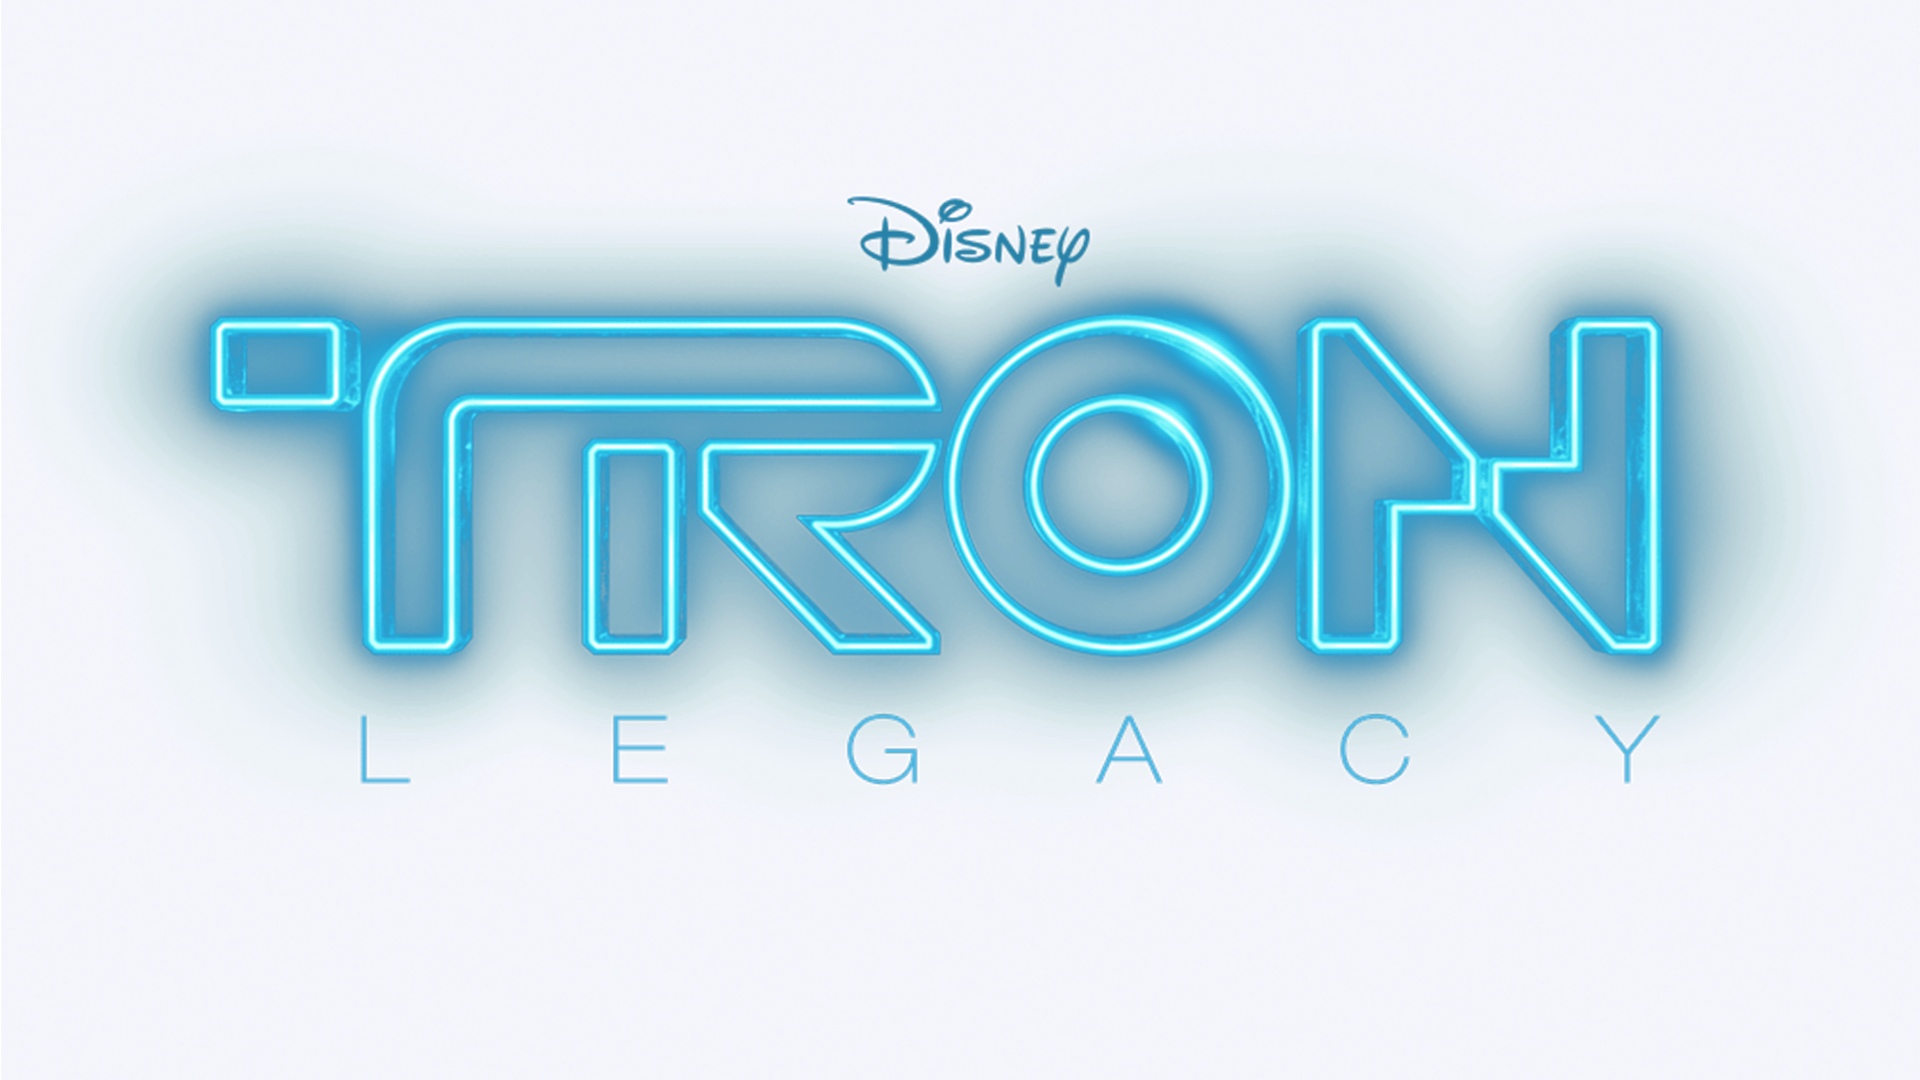 Tron Legacy Logo